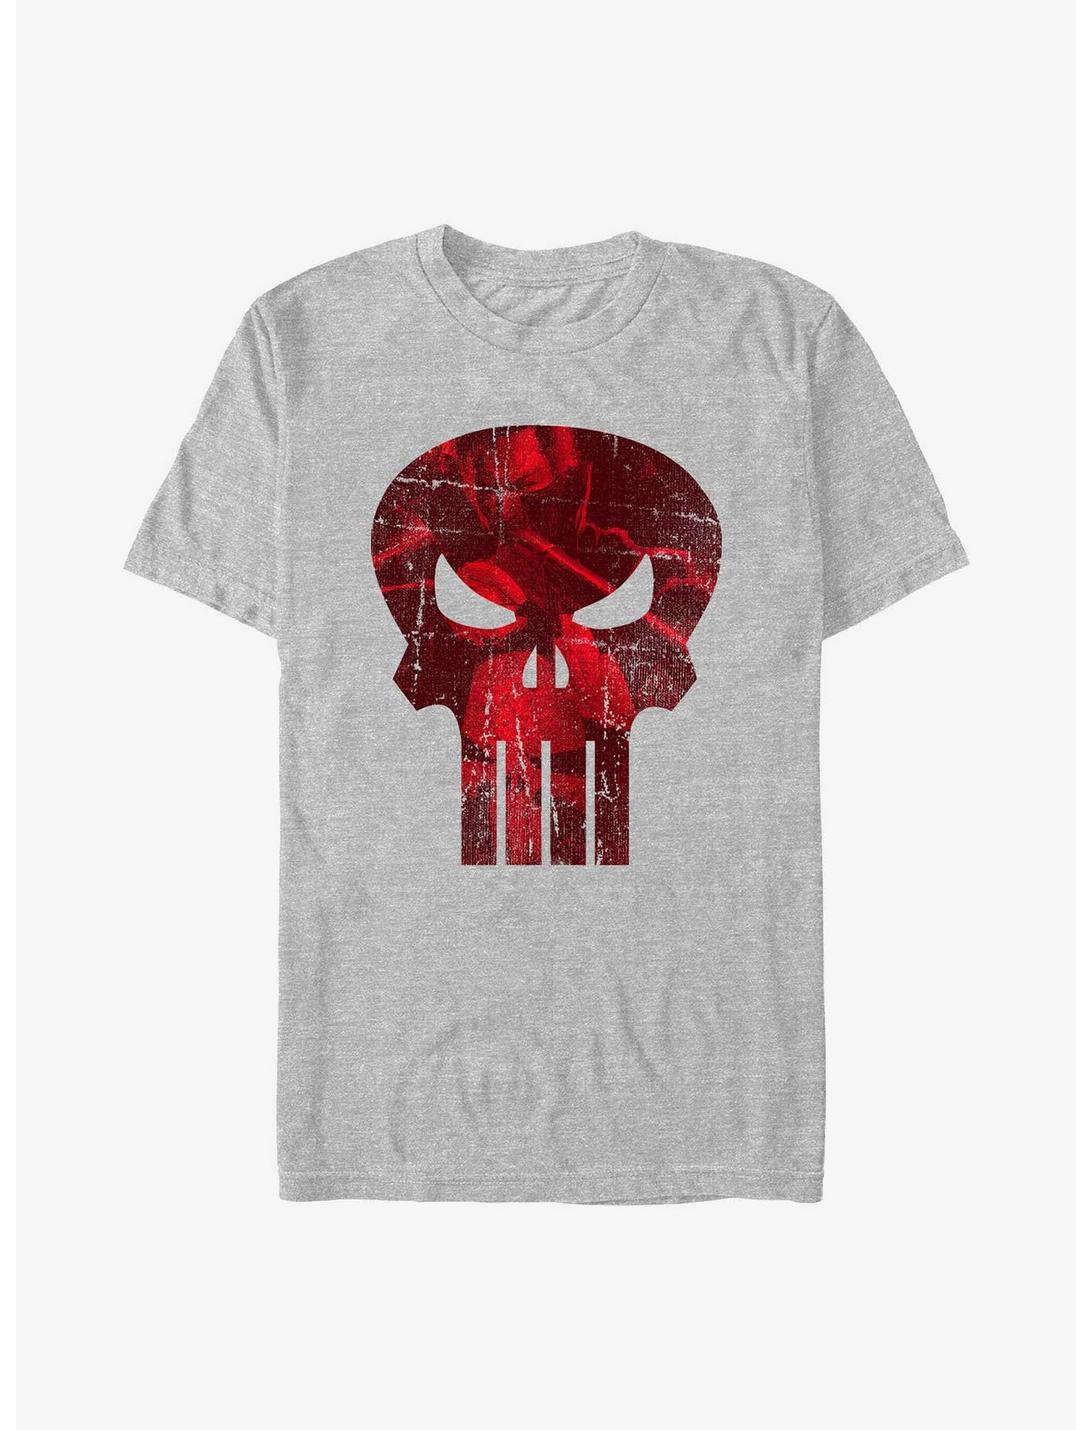 Marvel Punisher Logo Filled With Rage T-Shirt, ATH HTR, hi-res